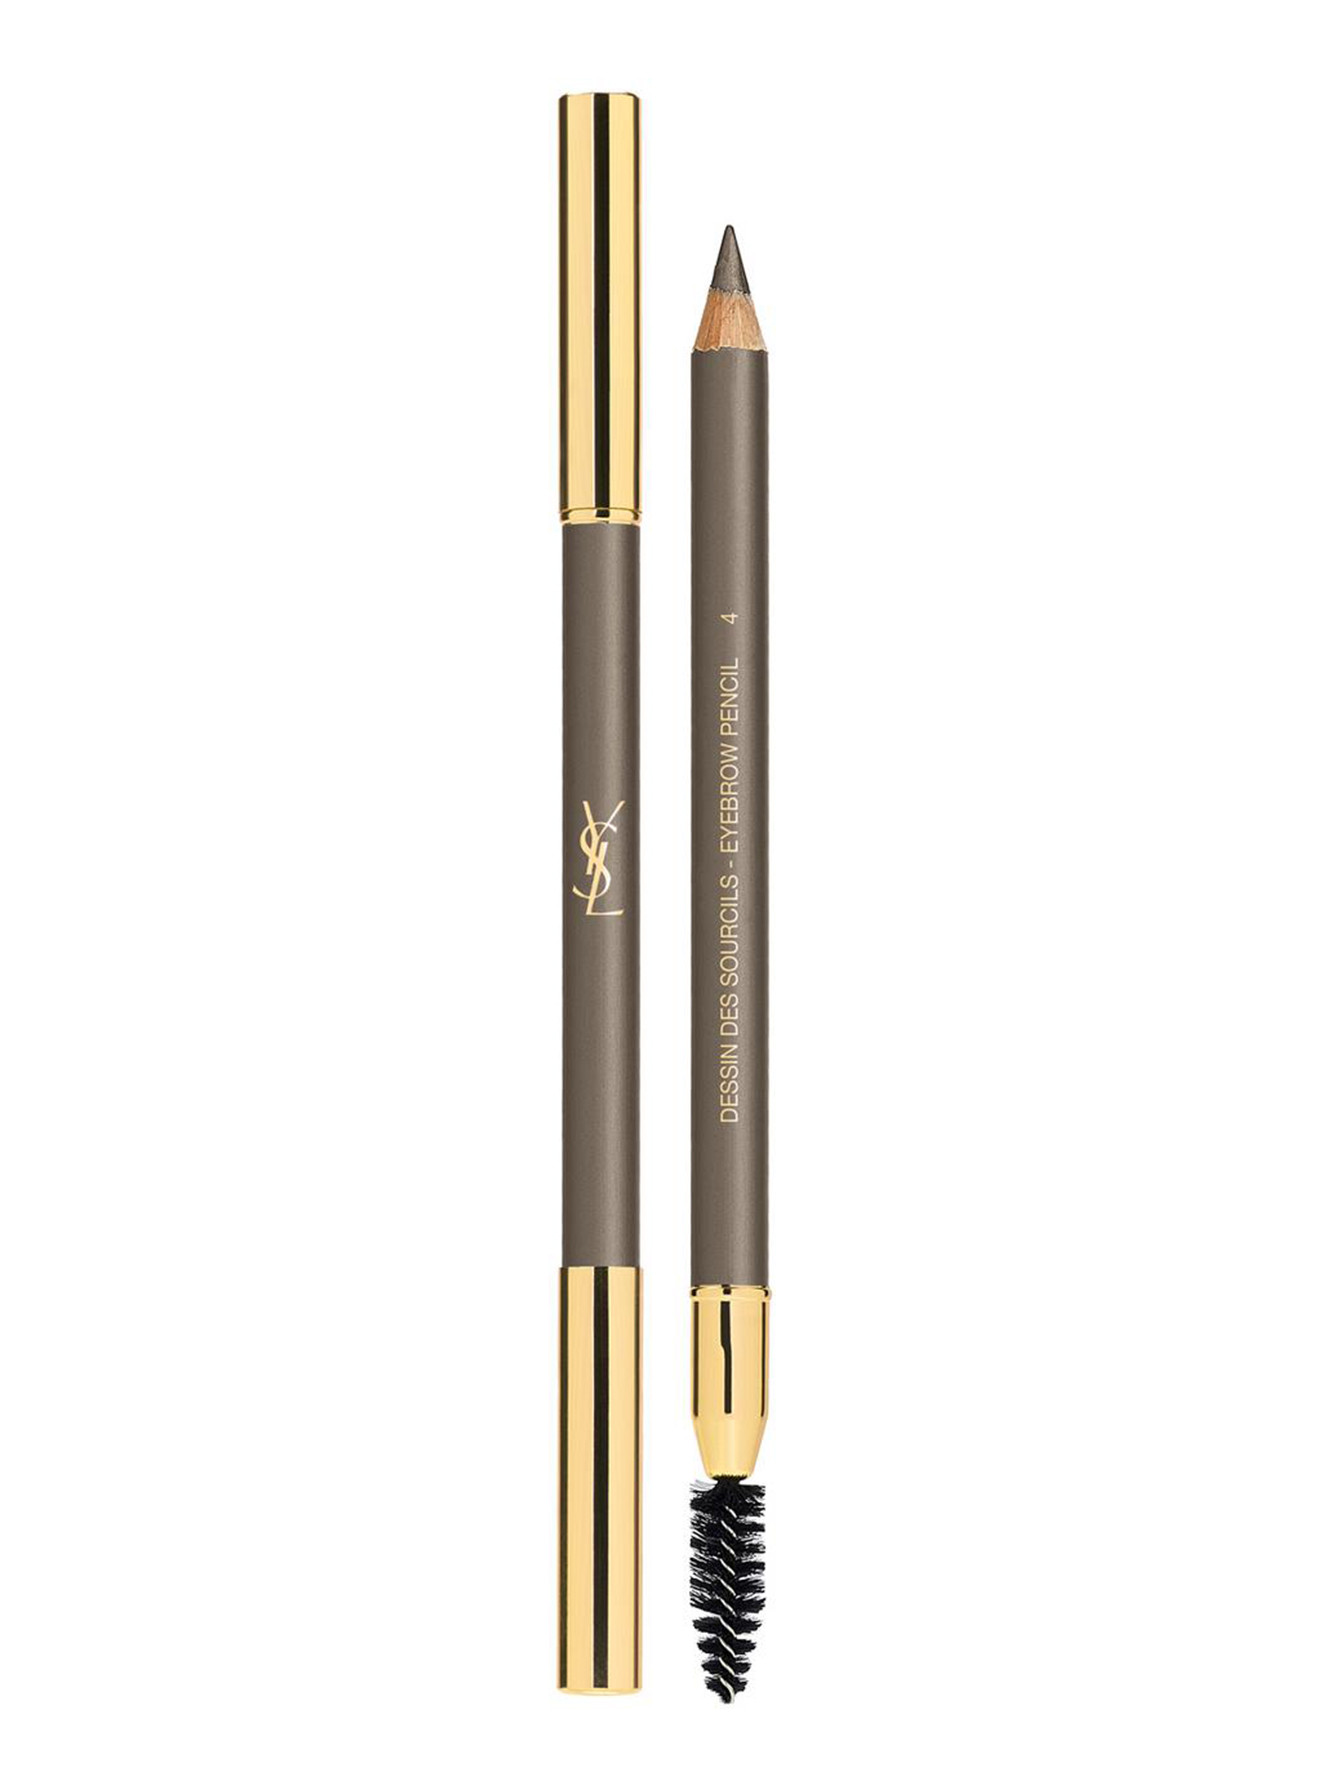 Карандаш для бровей - №4, Eyebrow Pencil - Общий вид